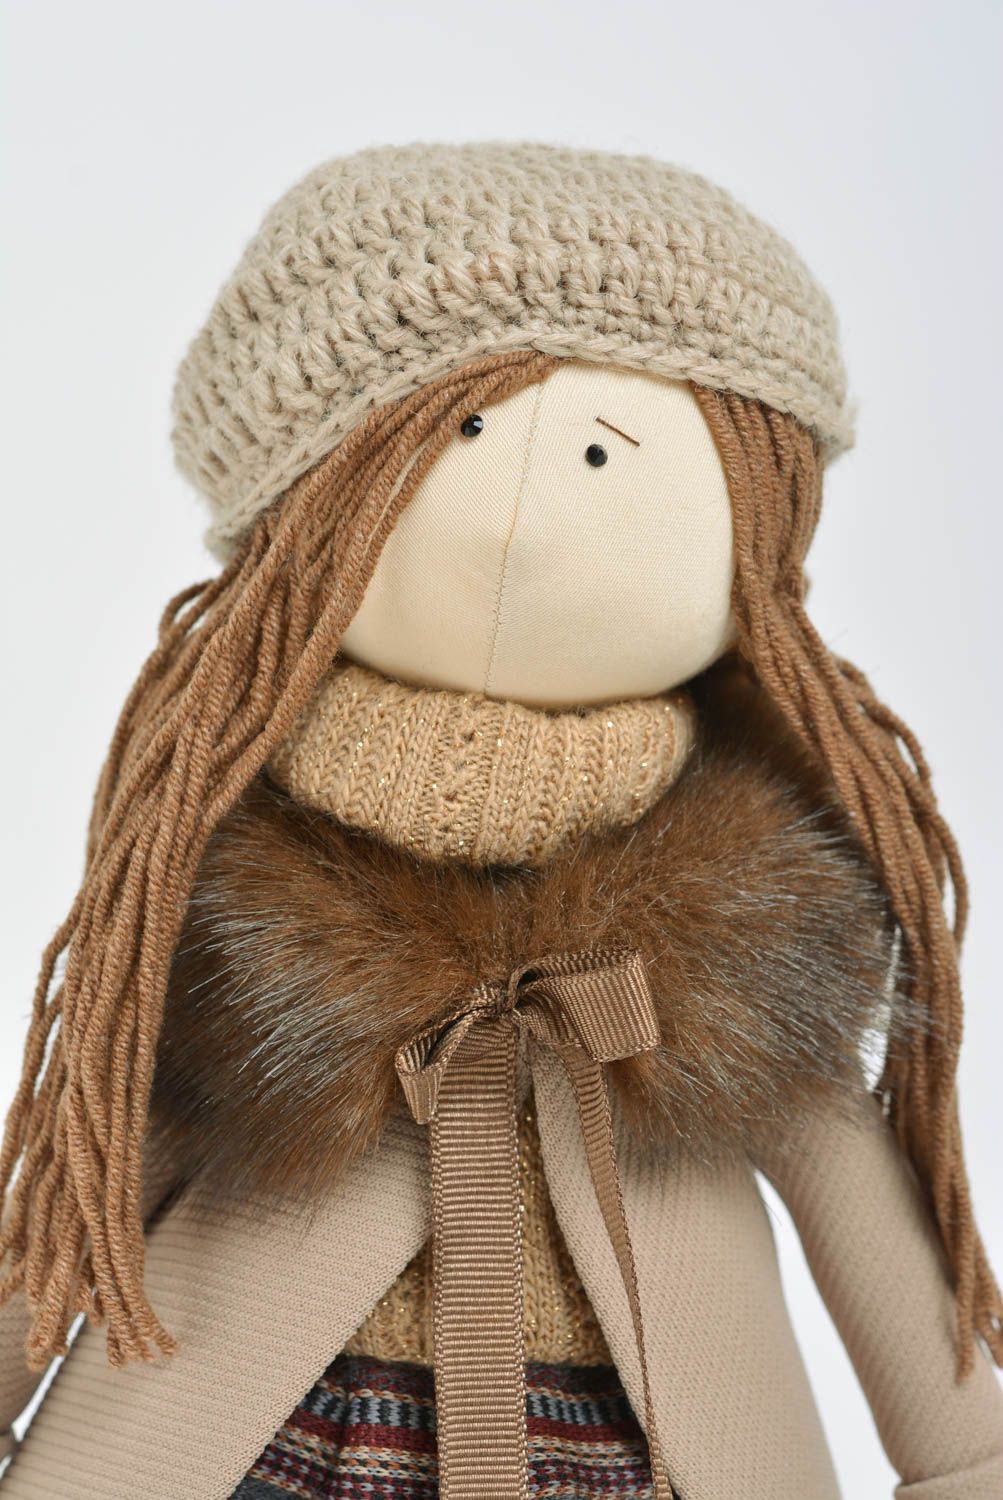 Игрушка кукла из ткани девочка в пальто на подставке небольшая ручной работы  фото 2